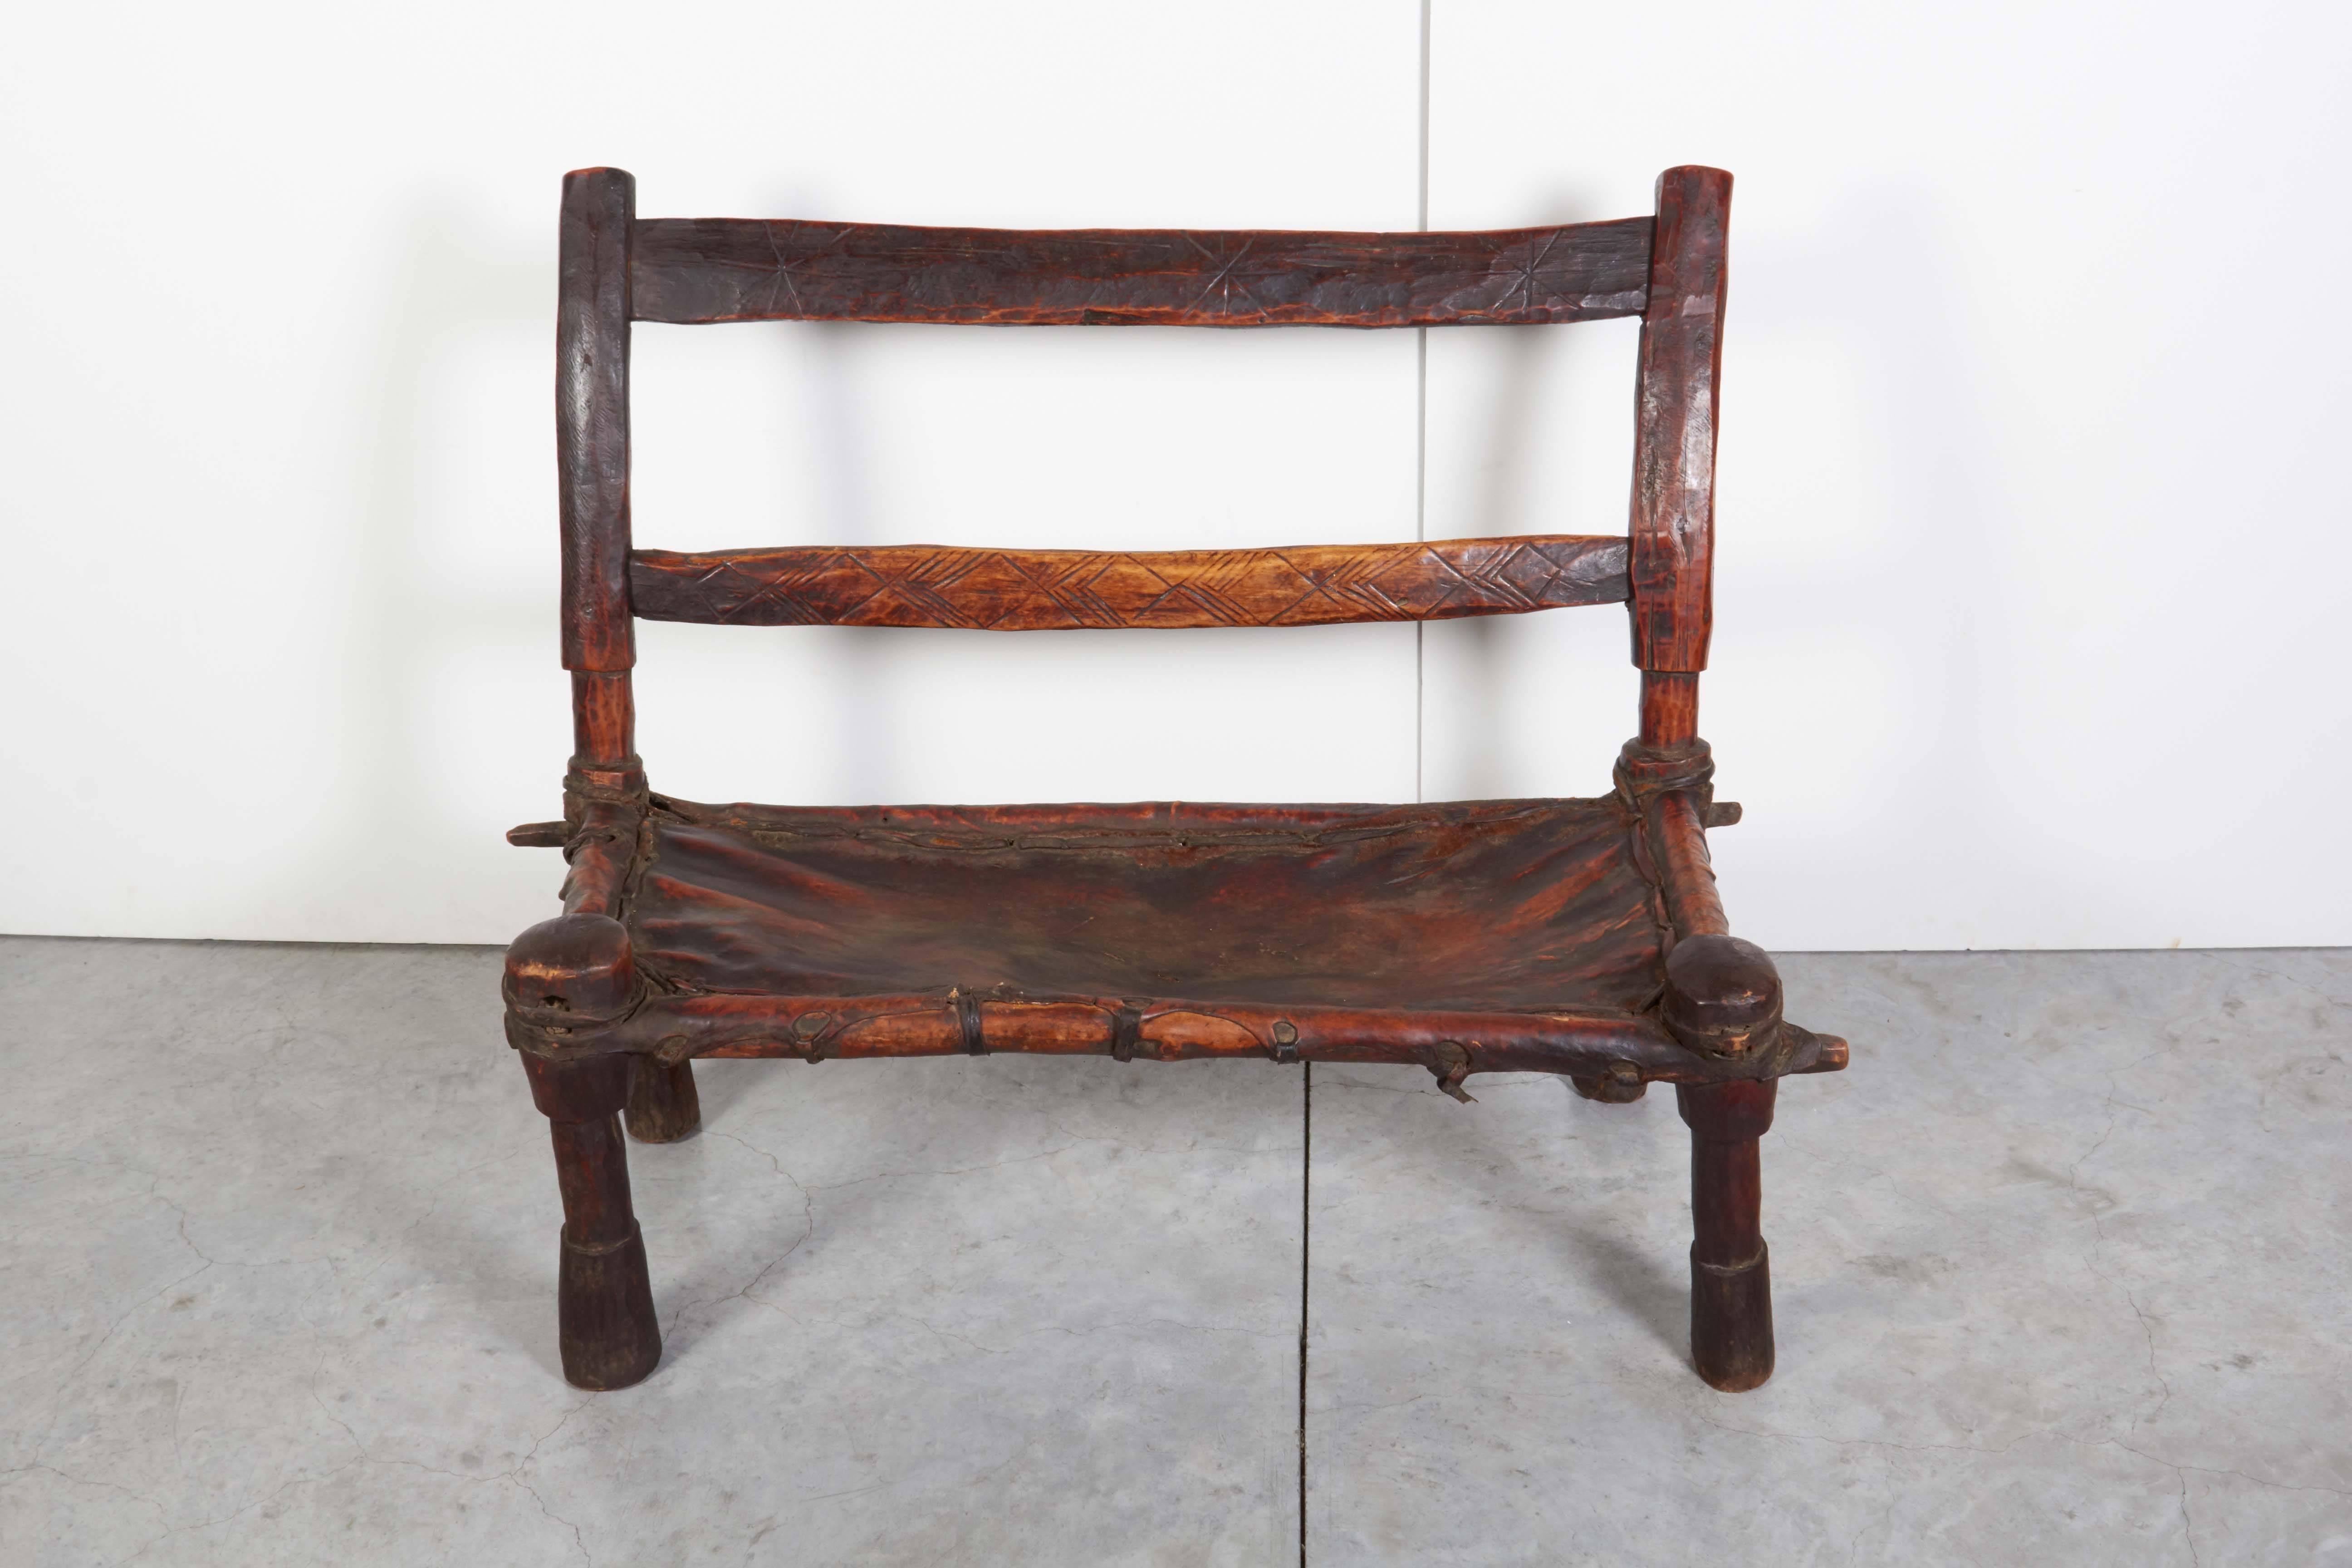 Eine schlichte, rustikale Holzbank mit einem schön abgenutzten Ledersitz und klarem Design. Dieser doppelte Stuhl/Bank aus Äthiopien sieht aus jedem Blickwinkel gut aus und hat eine große Präsenz. 
CH371.